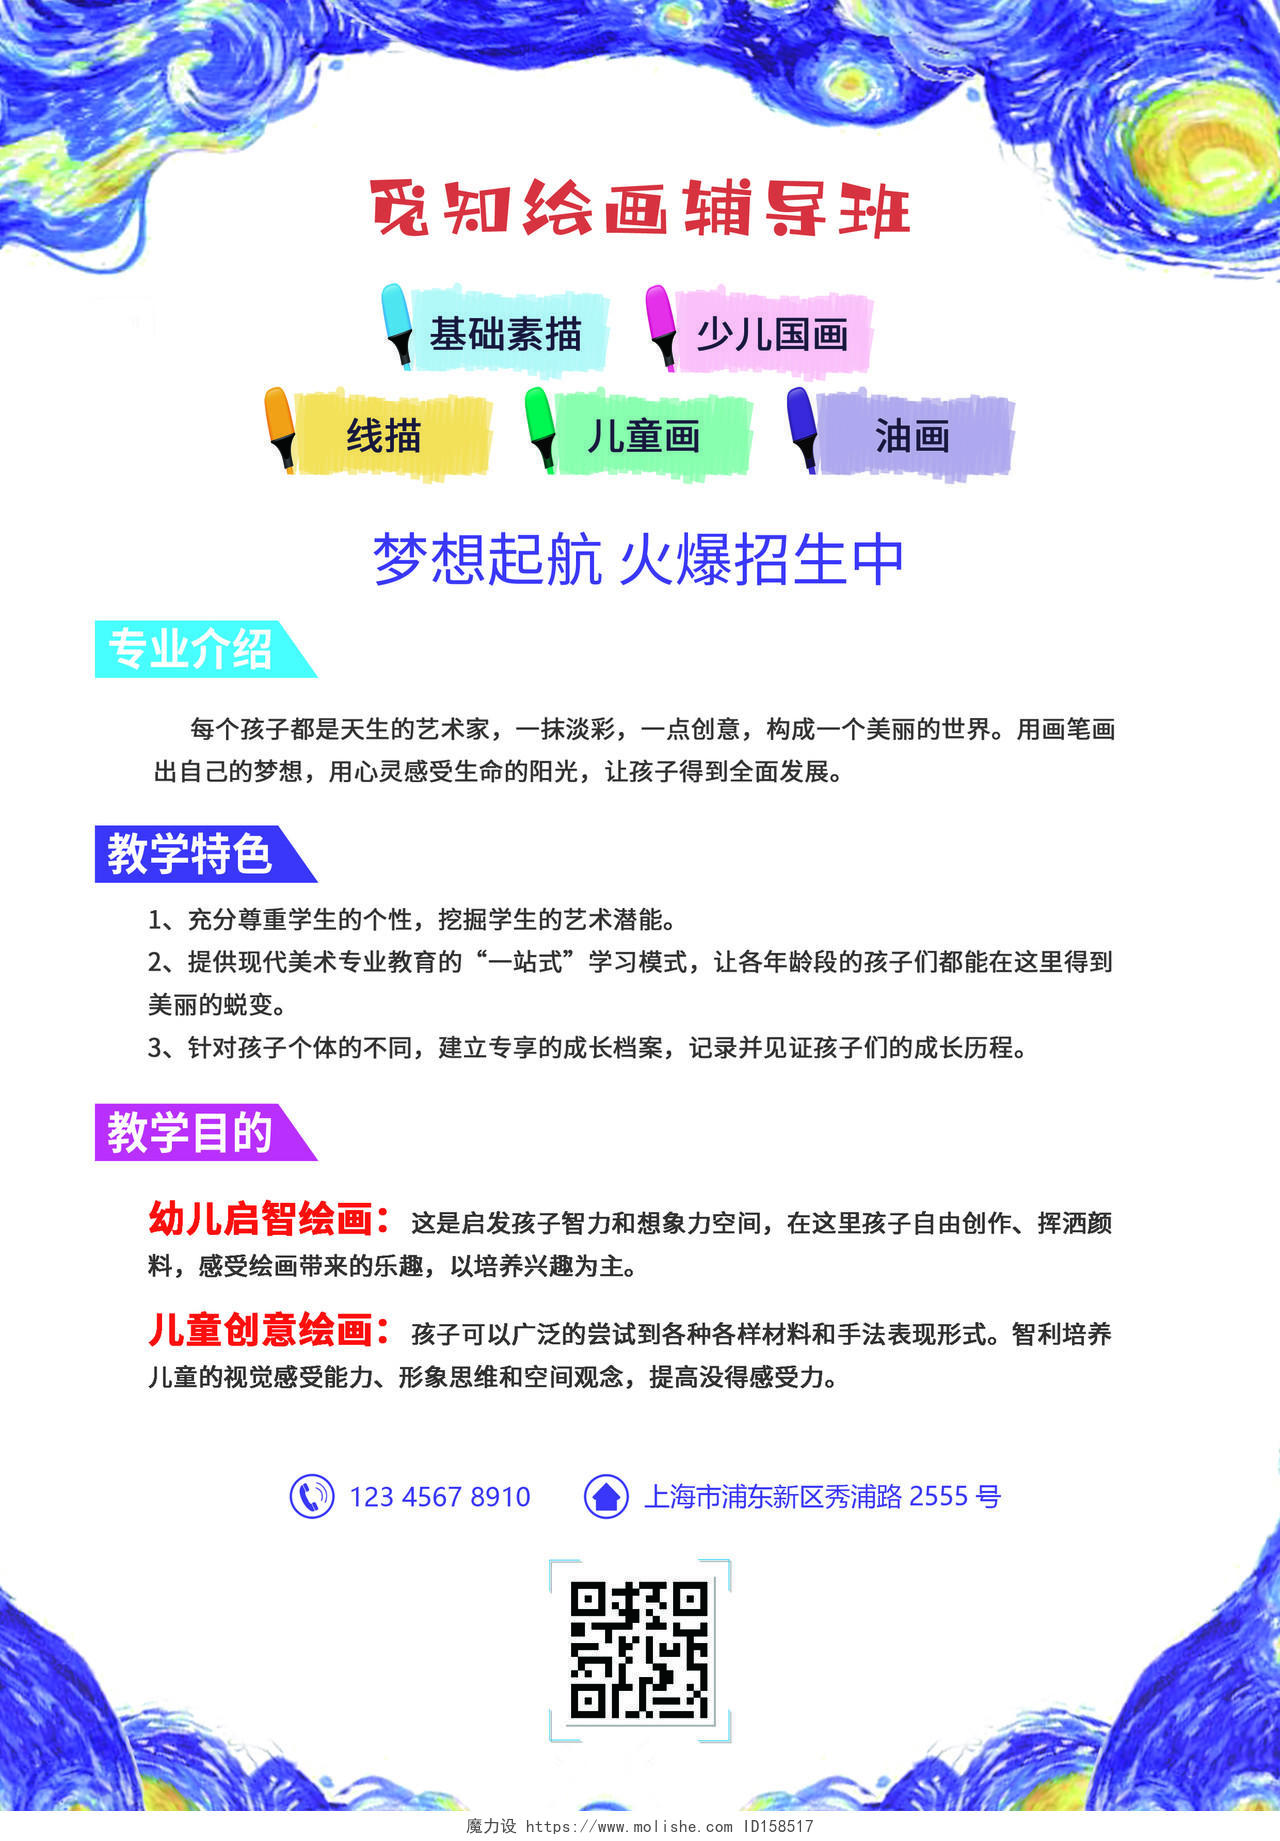 蓝色紫色卡通梦幻美术辅导班美术暑假班招生宣传单